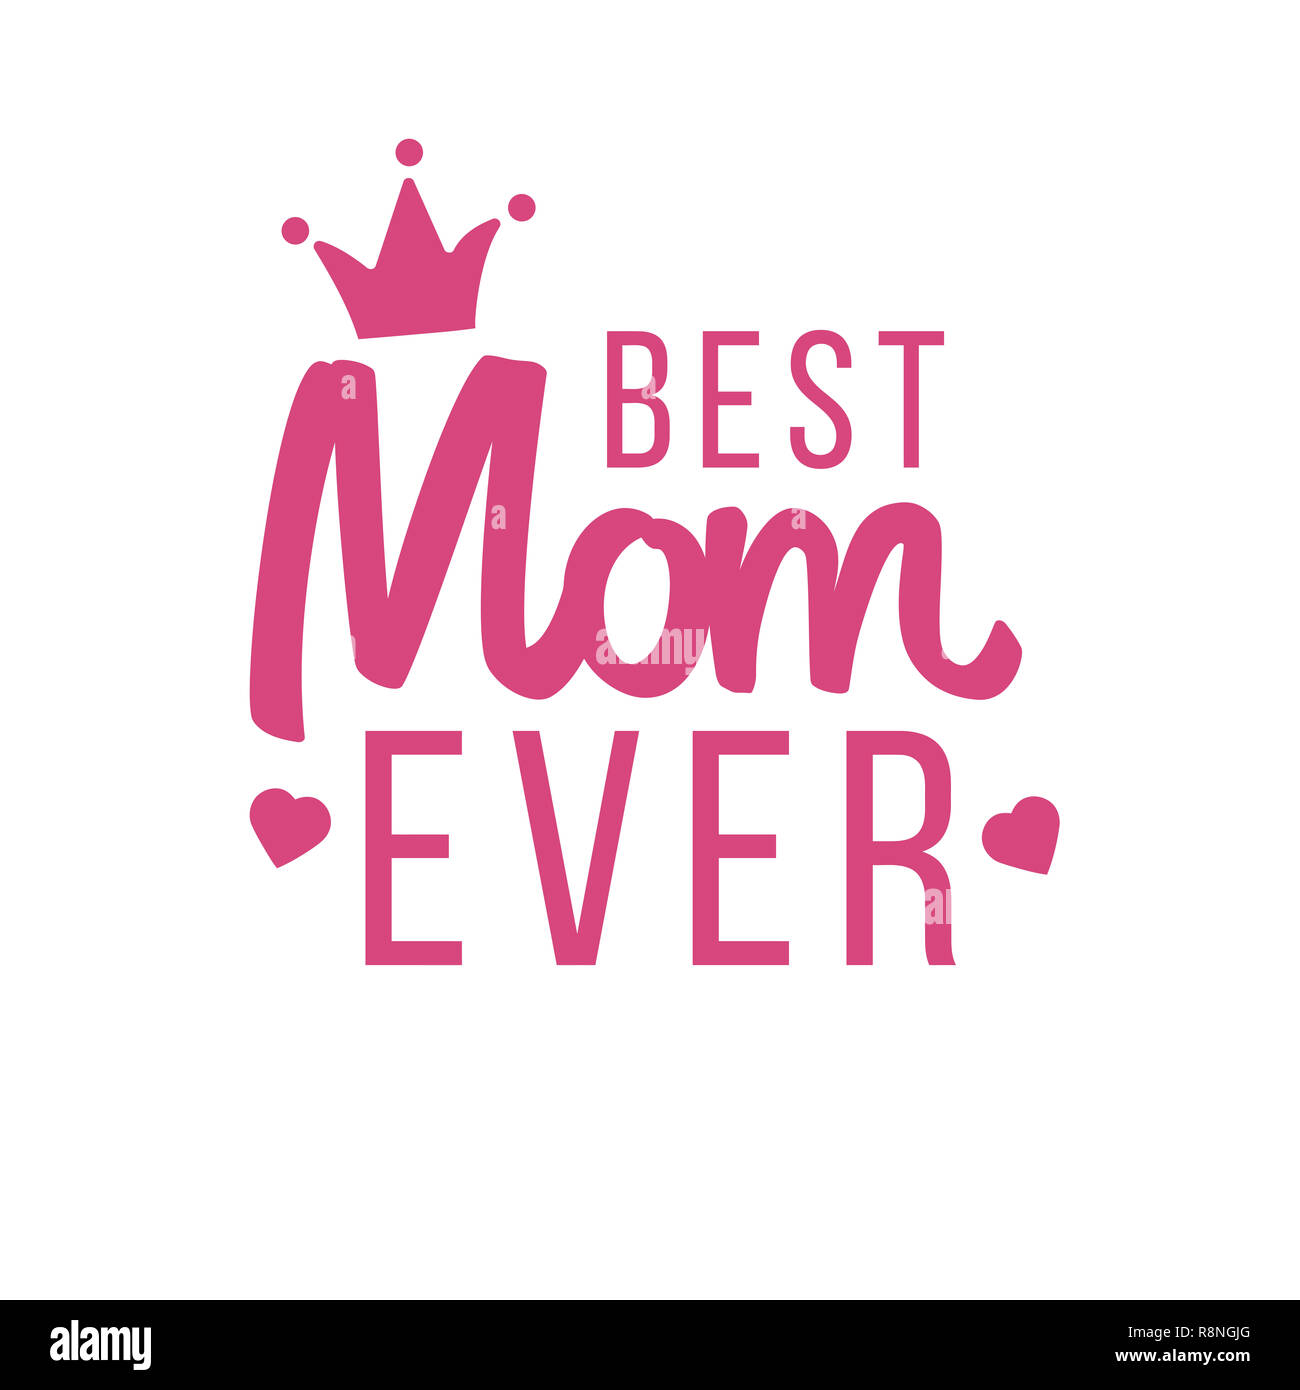 https://c8.alamy.com/comp/R8NGJG/mothers-day-best-mom-ever-love-pink-illustration-R8NGJG.jpg